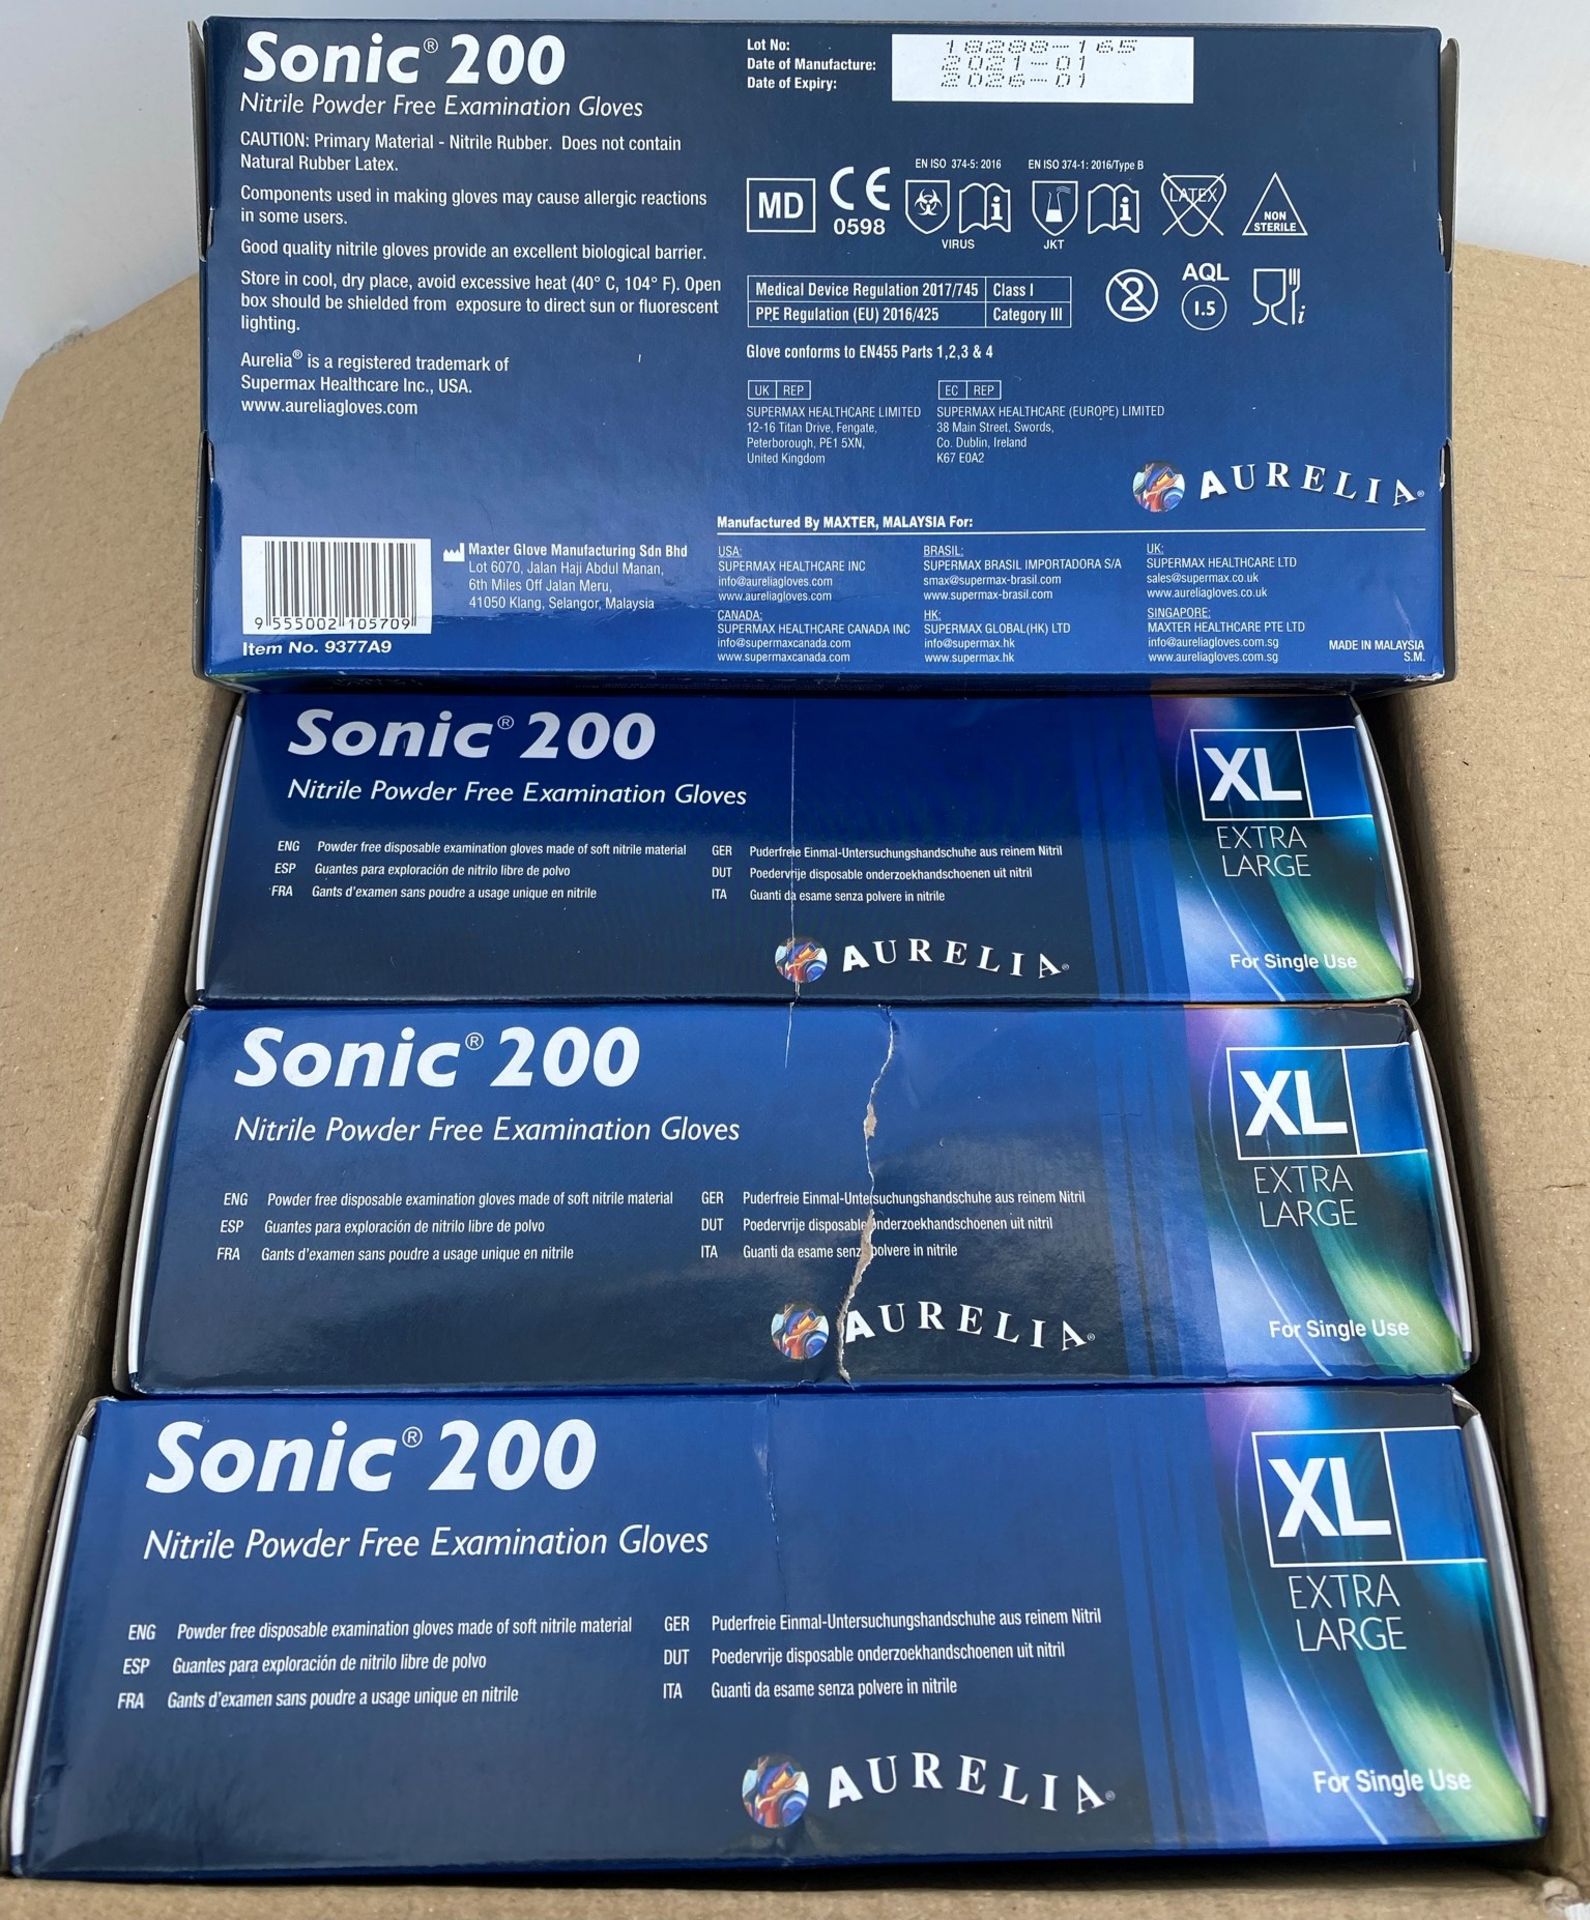 10 x boxes of 200 x Aurelia Sonic 200 Nitrile Powder Free Examination Gloves - Size Extra Large - - Image 2 of 2